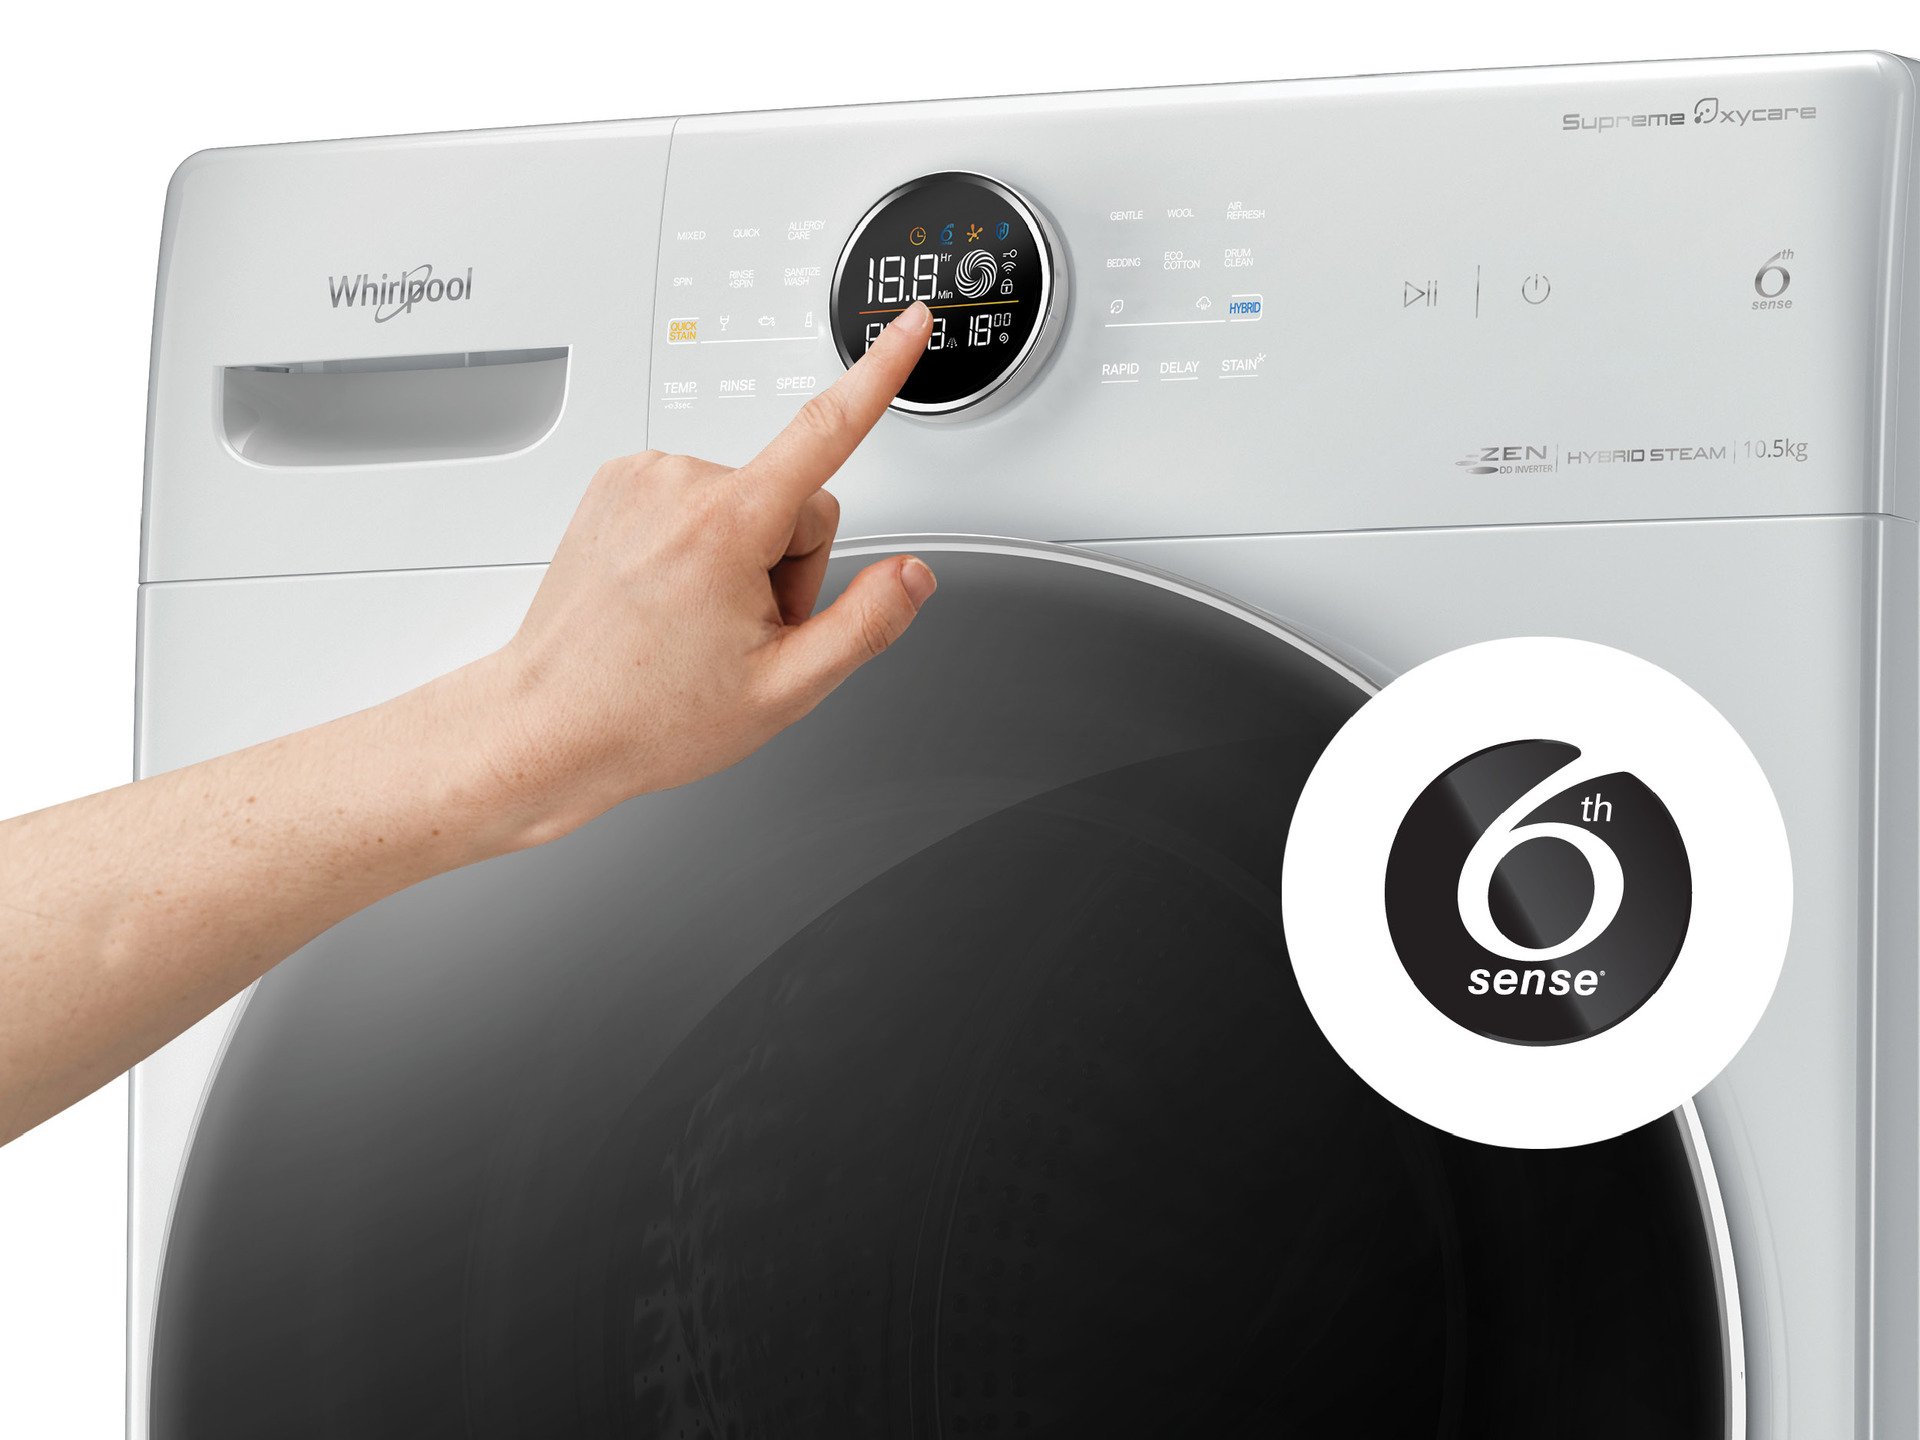 Máy giặt whirlpool chế độ tự đông 6th sense